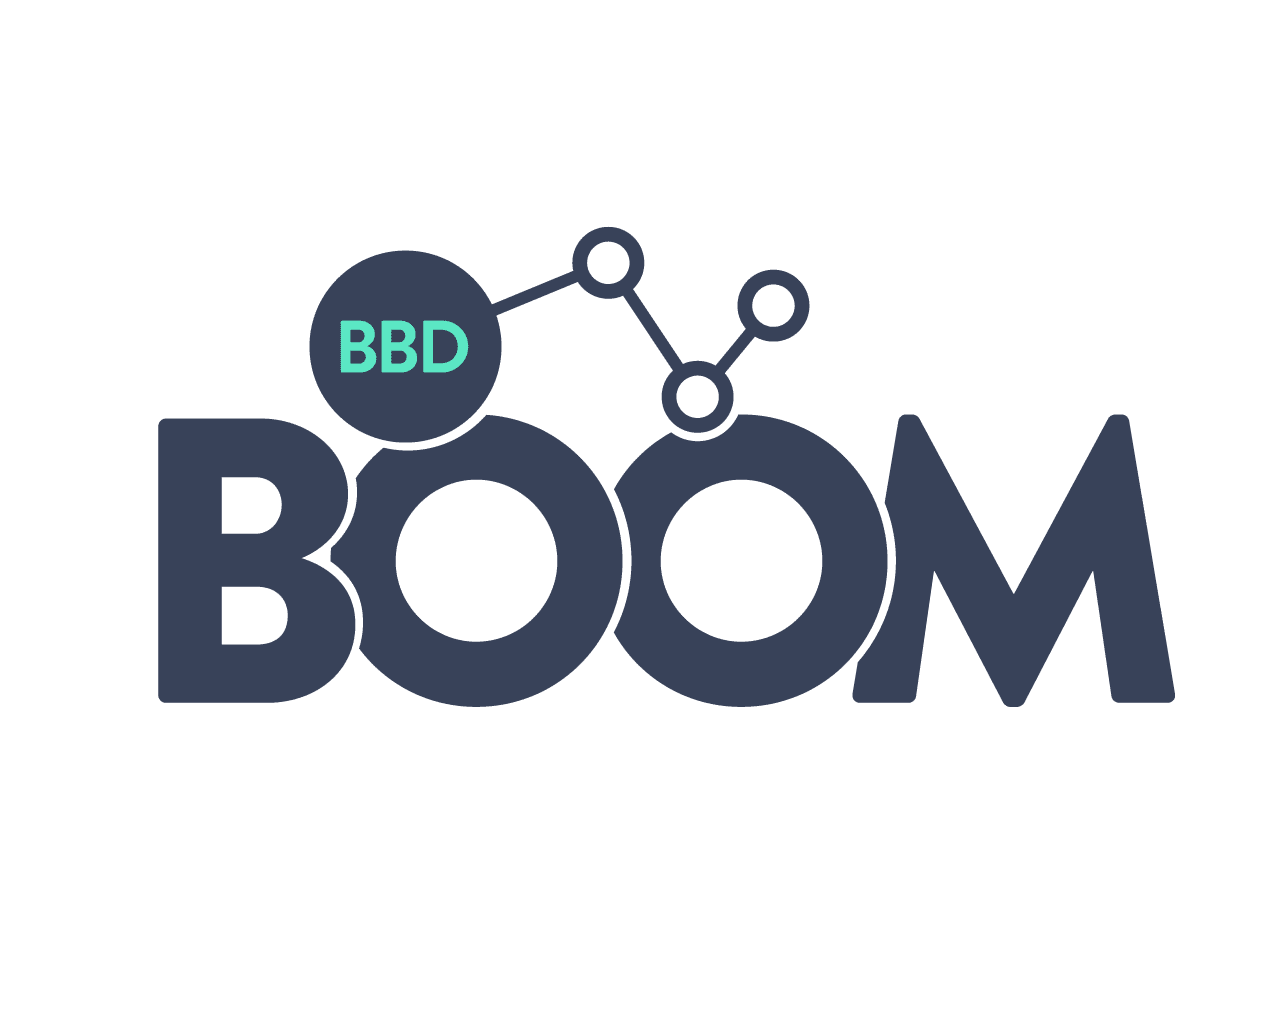 BBD Boom Ltd